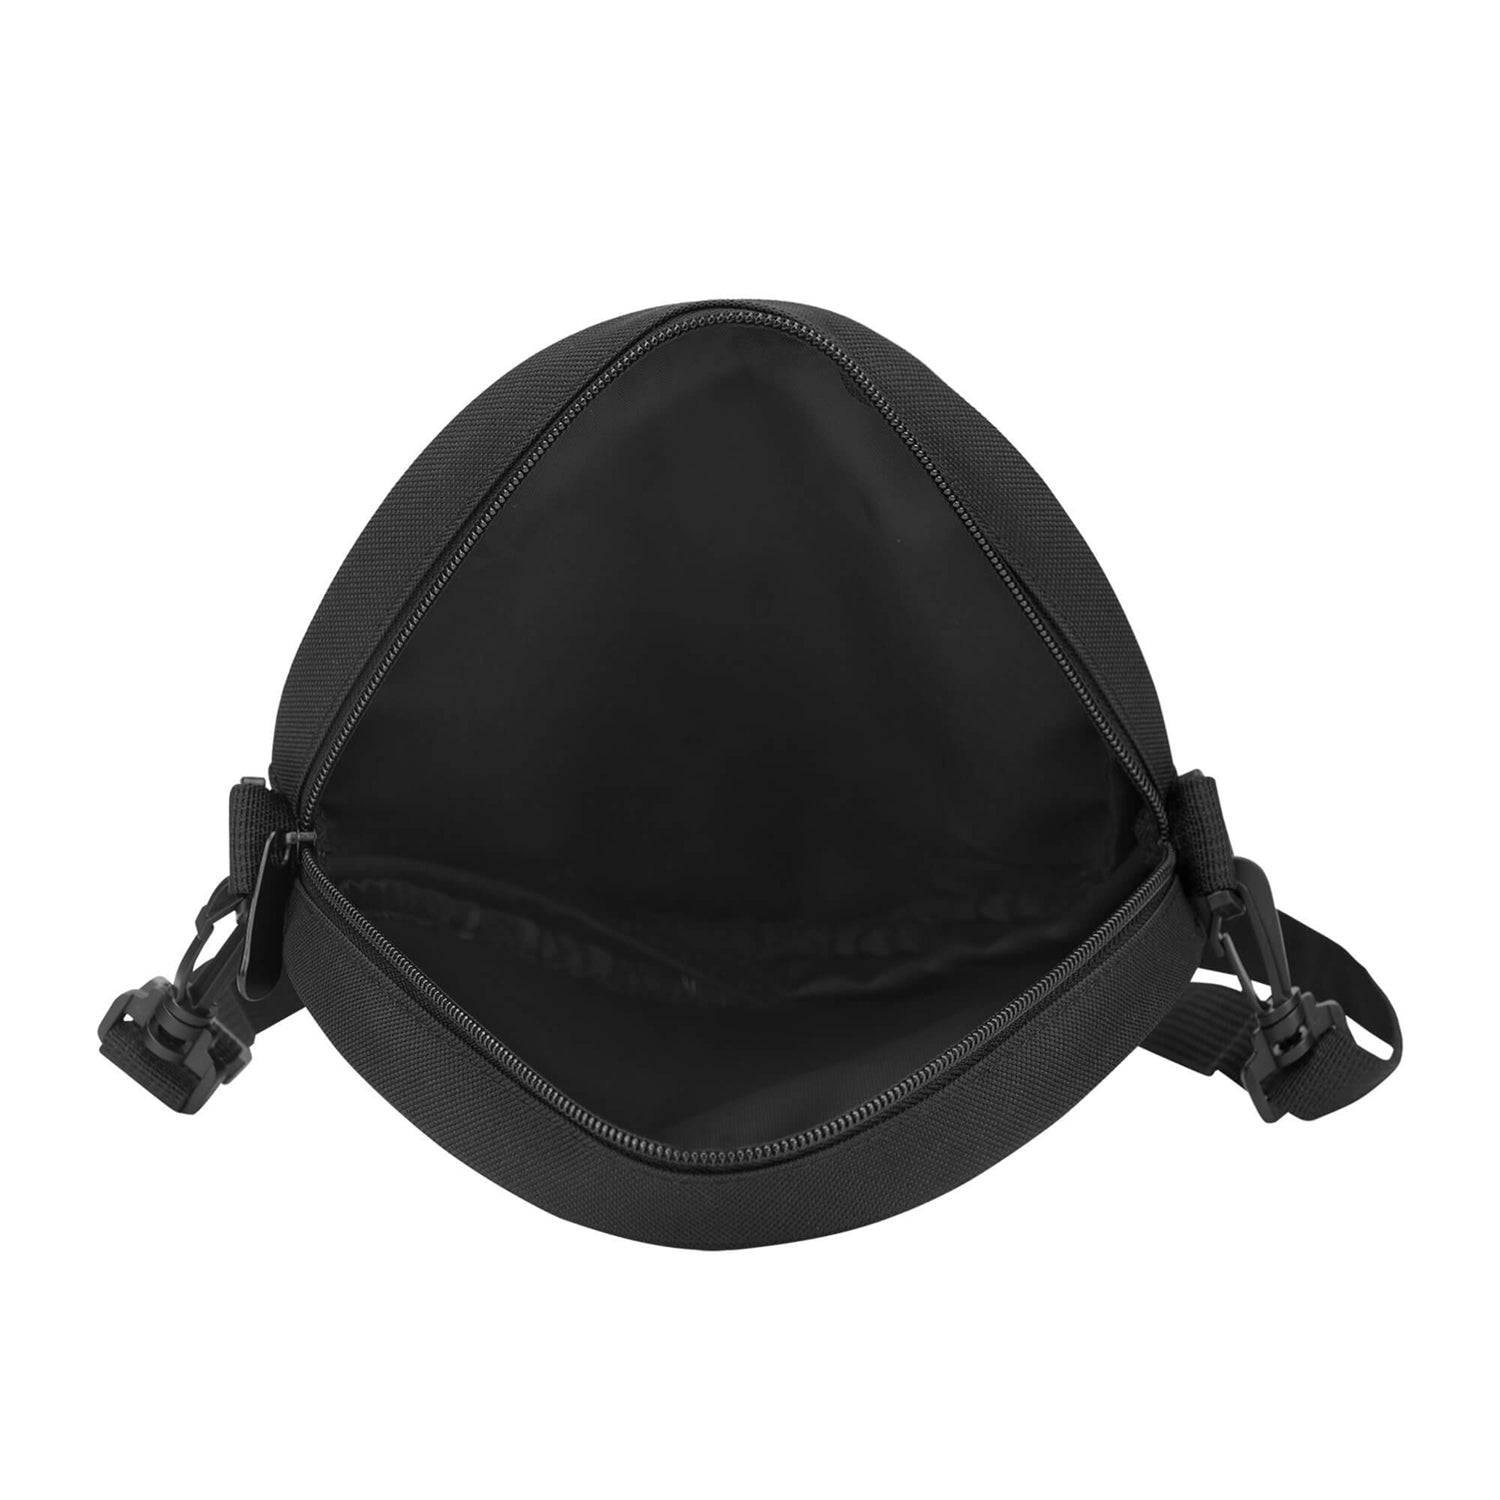 drummond-tartan-round-satchel-bags